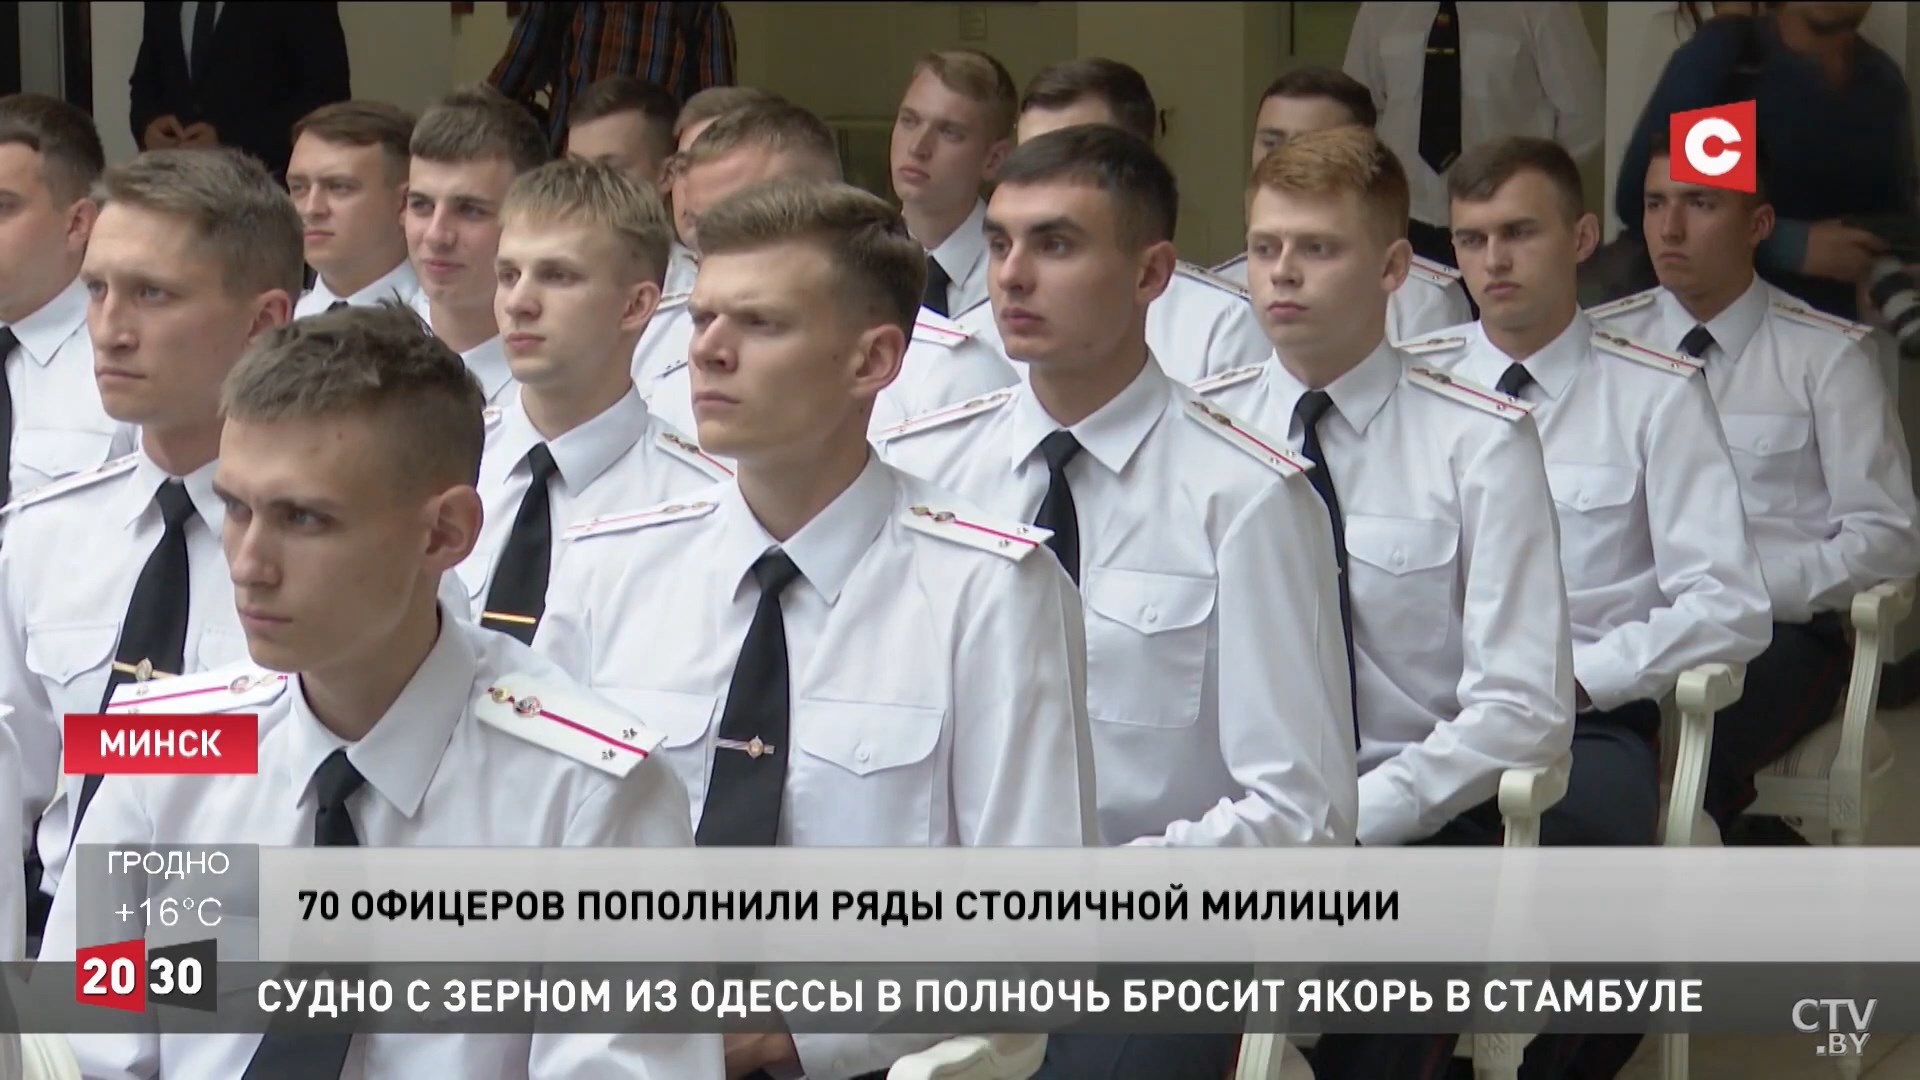 70 молодых лейтенантов пополнили ряды минской милиции